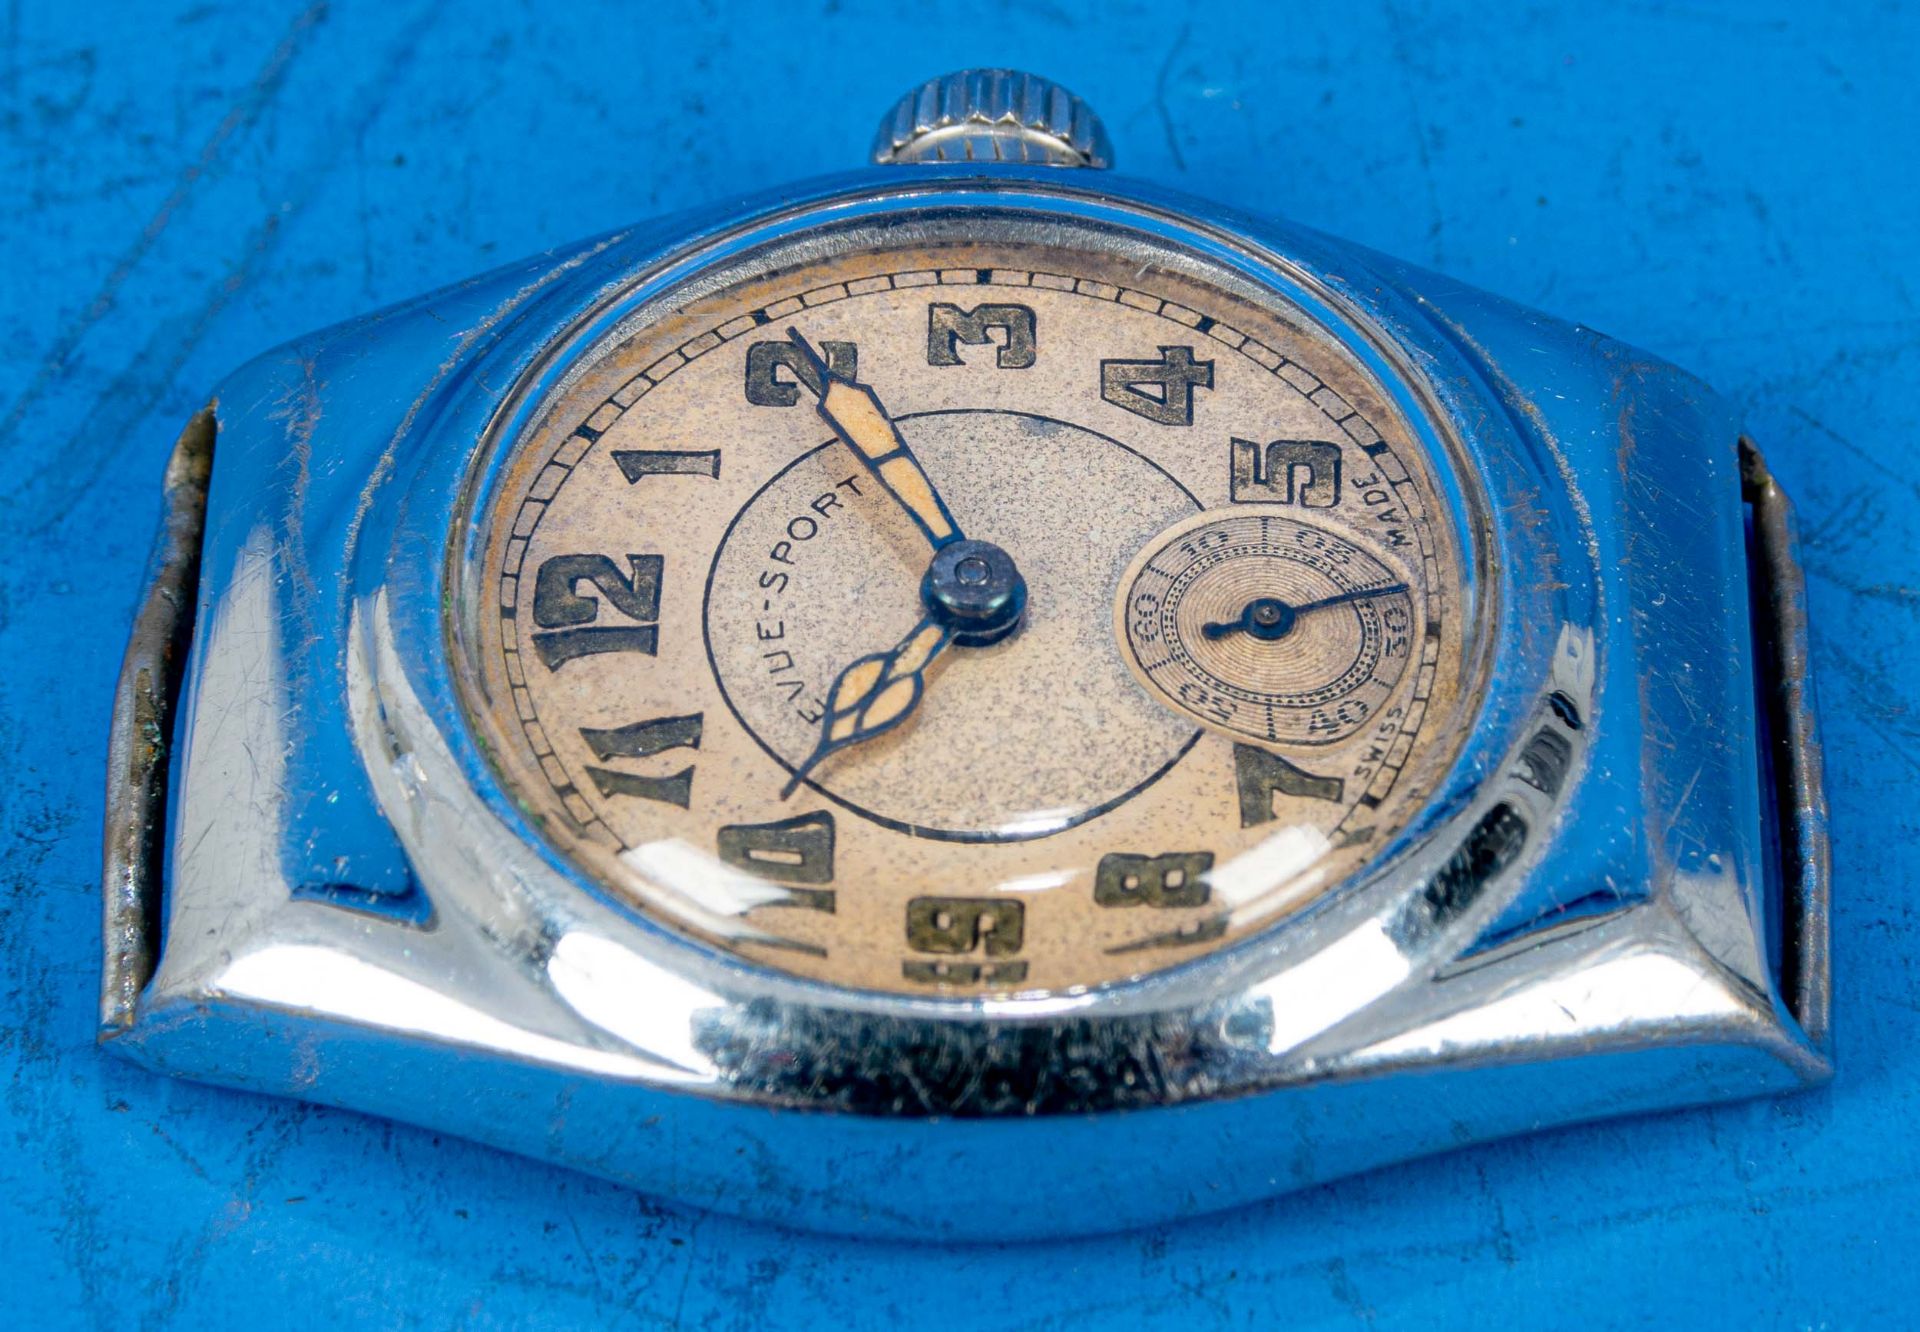 "REVUE SPORT" Unisex Armbanduhr, Stahlgehäuse, wohl 1930er Jahre, Gehäusedurchmesser ca. 28 mm, ara - Bild 4 aus 5